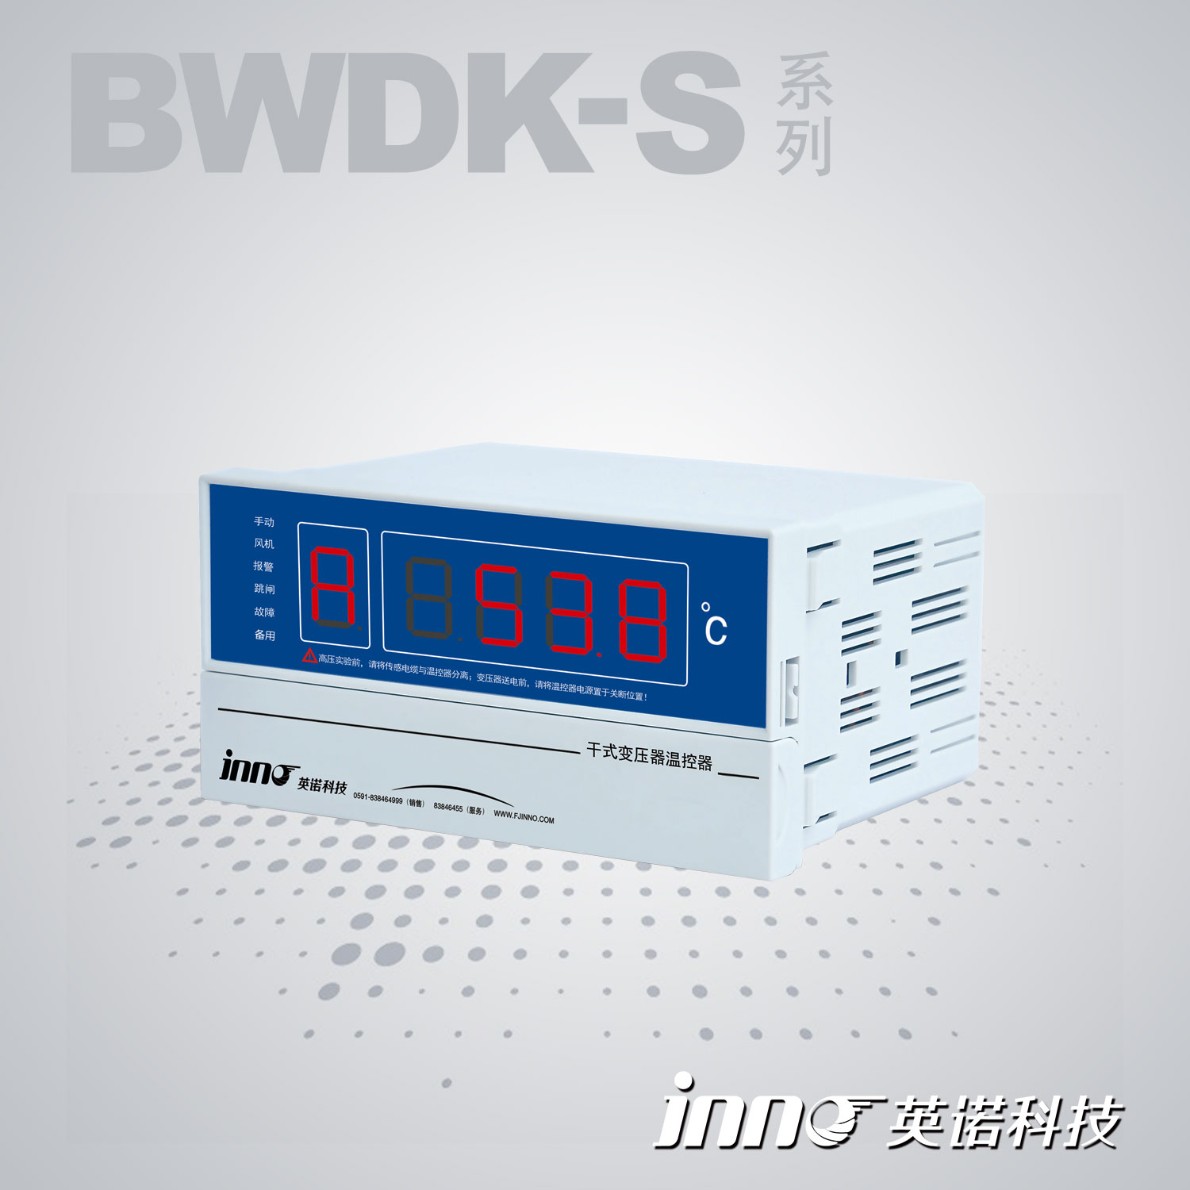 英诺嵌入式干变温控器BWDK-S201DEF福州英诺电子科技有限公司